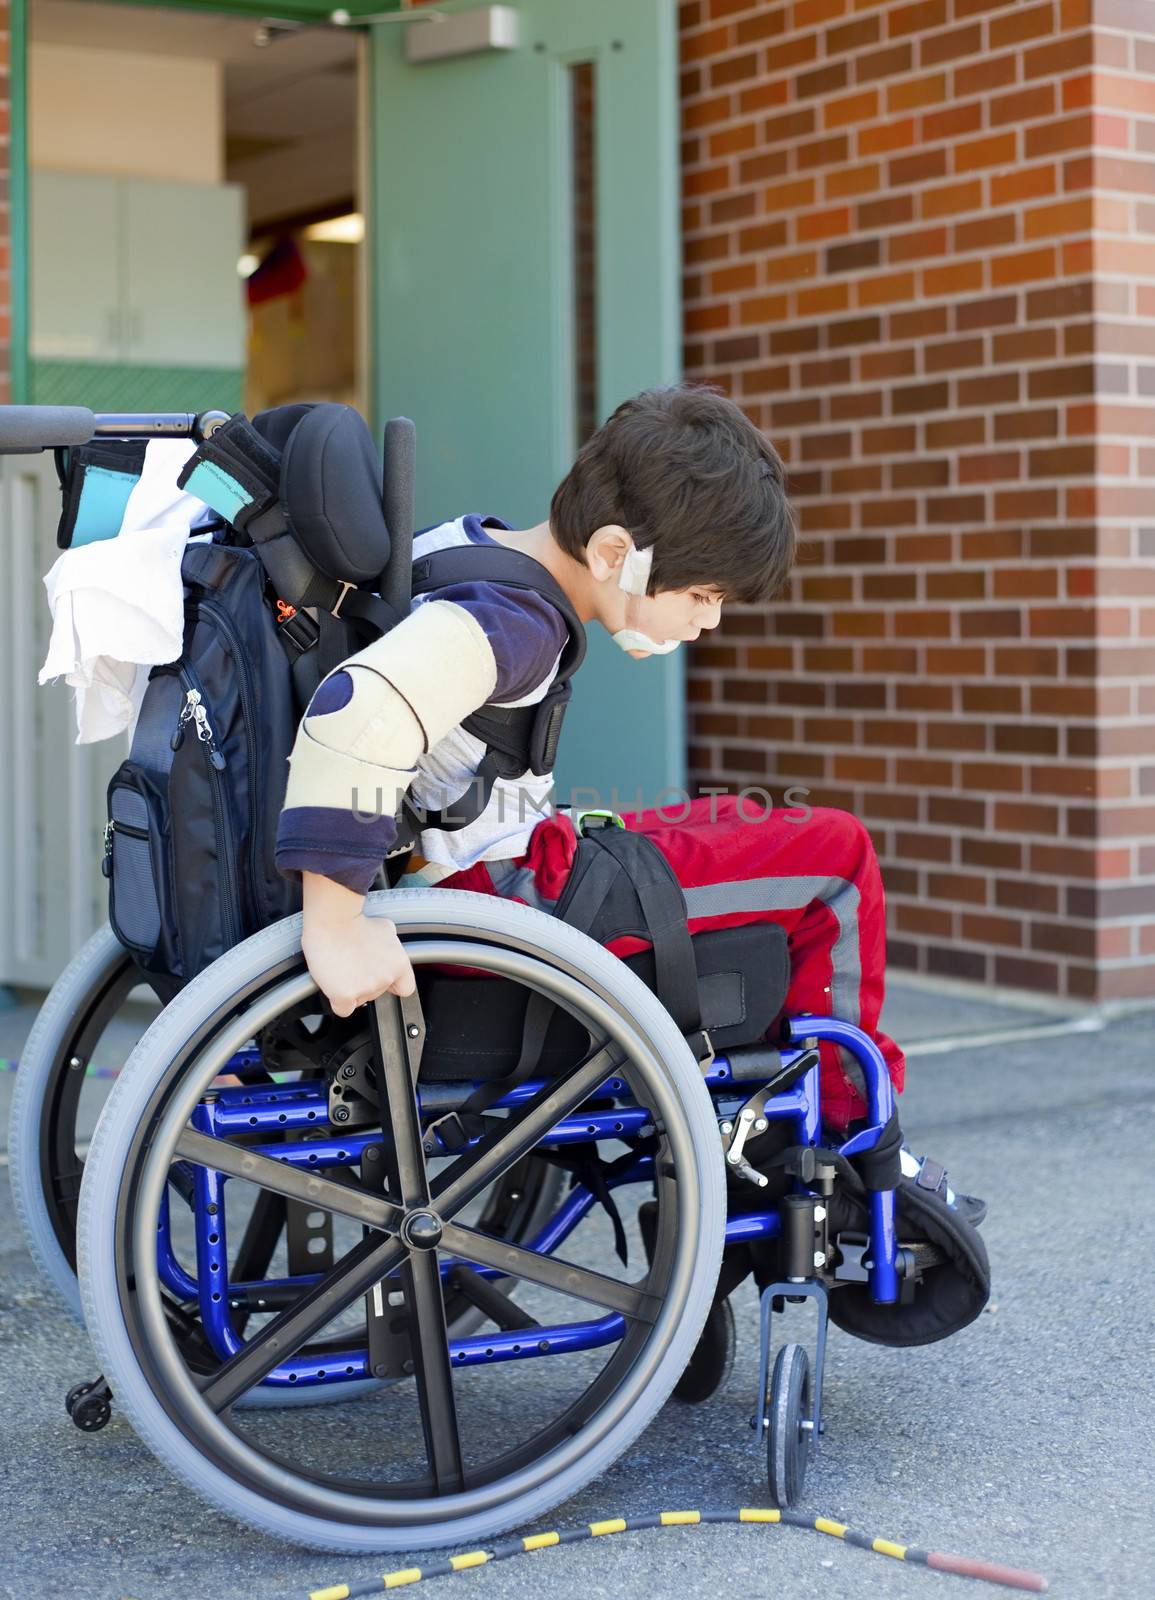 Disabled kindergartener in wheelchair on playground at recess by jarenwicklund